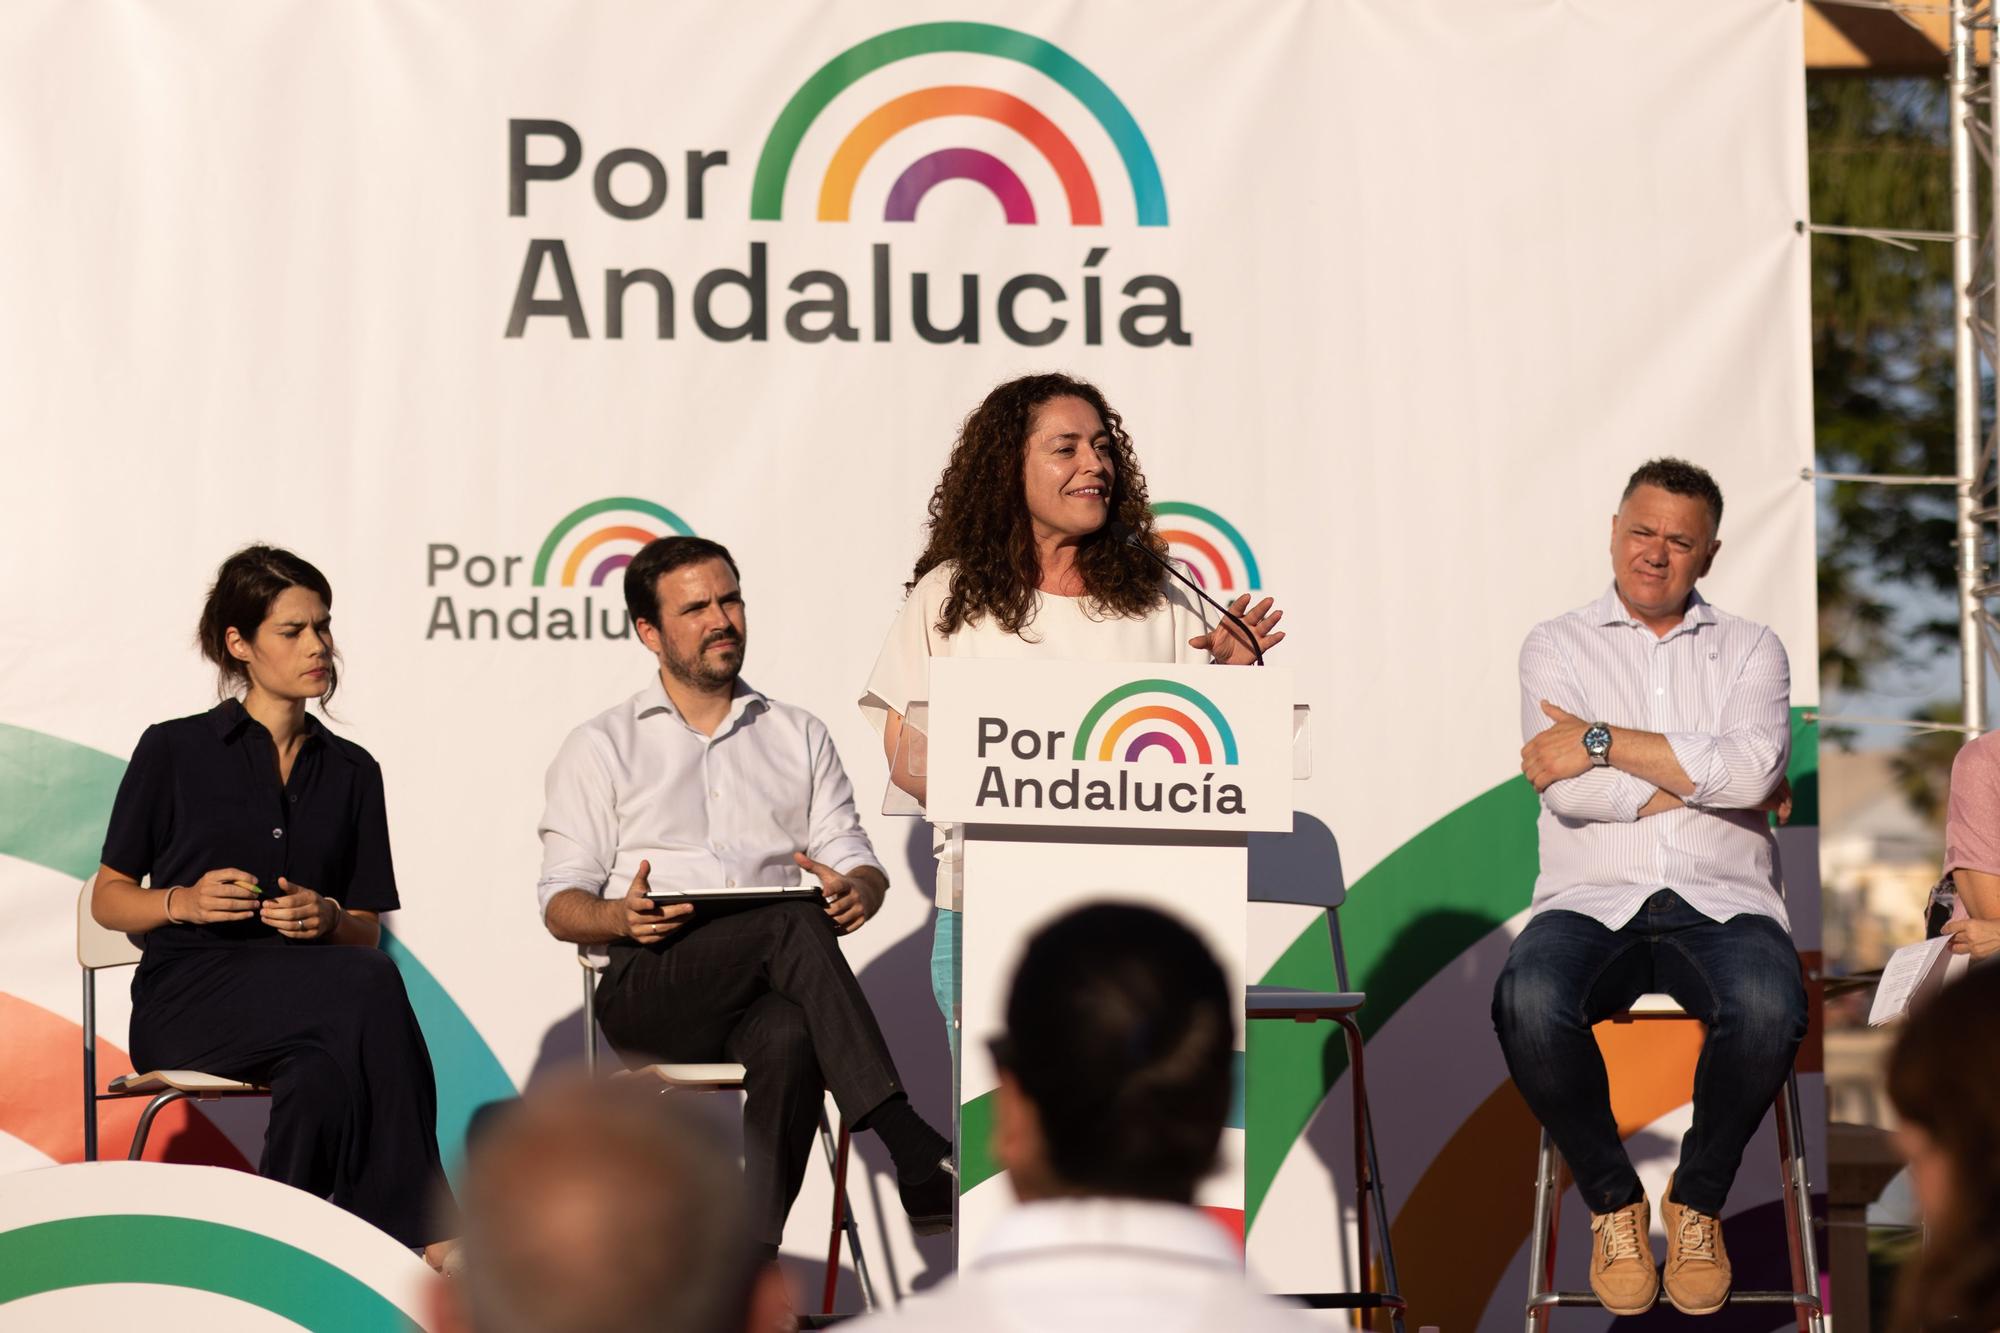 La candidata a la presidencia de la Junta de Andalucía de &quot;Por Andalucía&quot;, Inmaculada Nieto, interviene este miércoles durante un acto público del partido, en el Parque Huelín de Málaga, de cara a las elecciones al Parlamento de Andalucía de 2022 que se celebrarán el próximo 19 de junio.